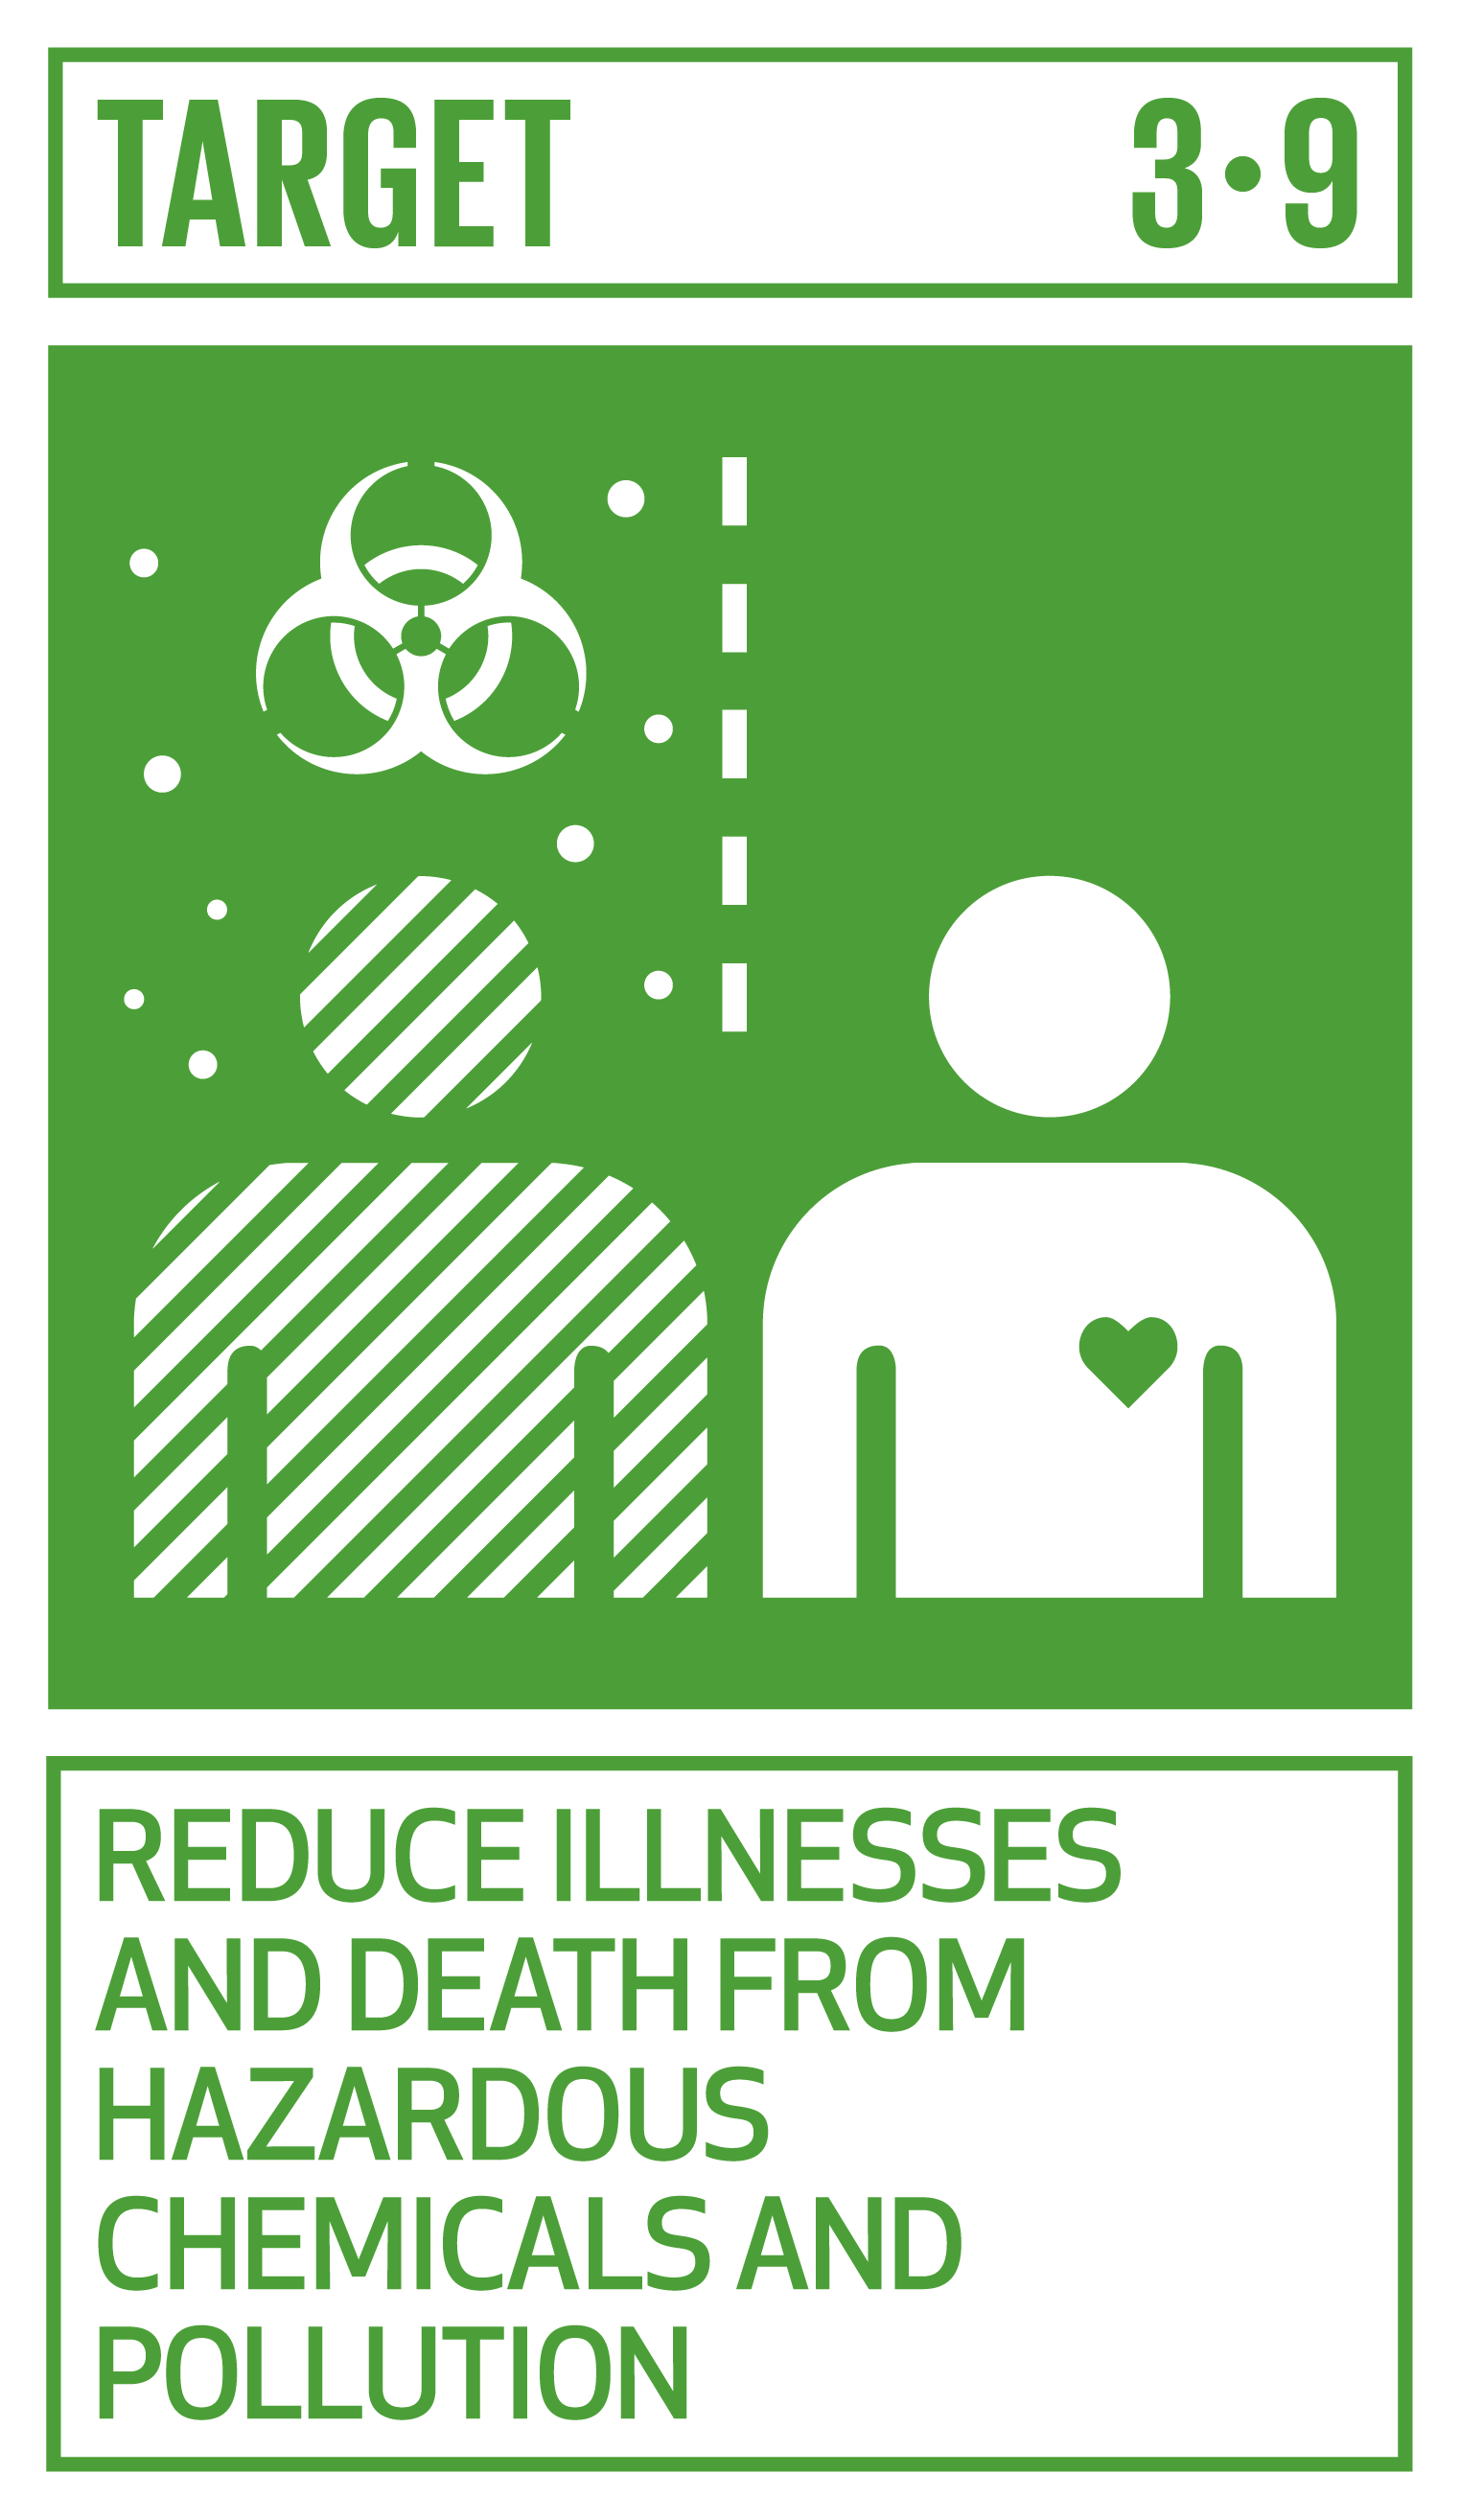 Goal,target,永續發展目標SDGs3目標3.9 減少有害化學物質和污染造成的疾病和死亡